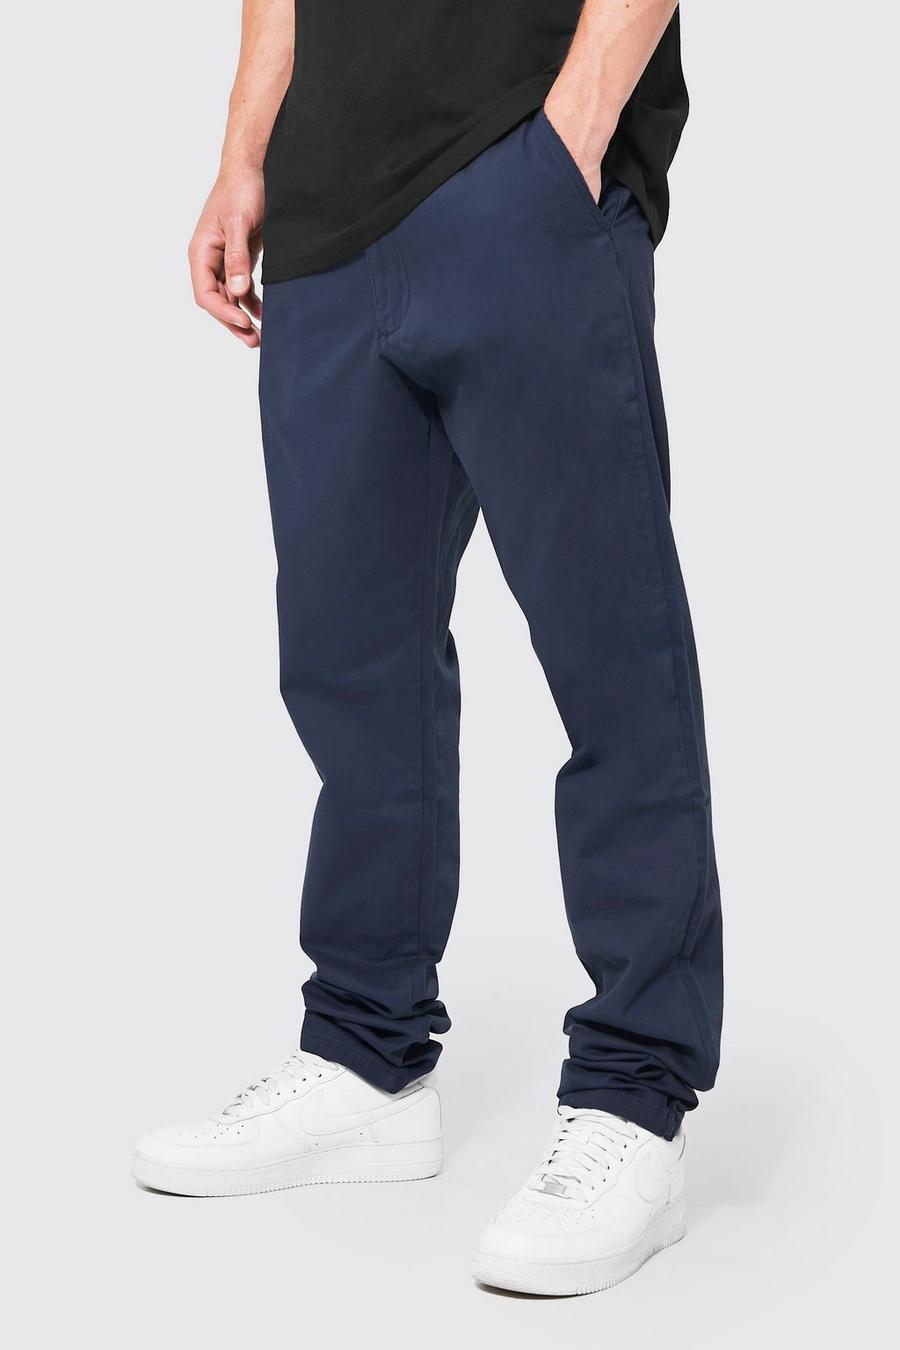 Pantalón Tall chino ajustado, Navy azul marino image number 1